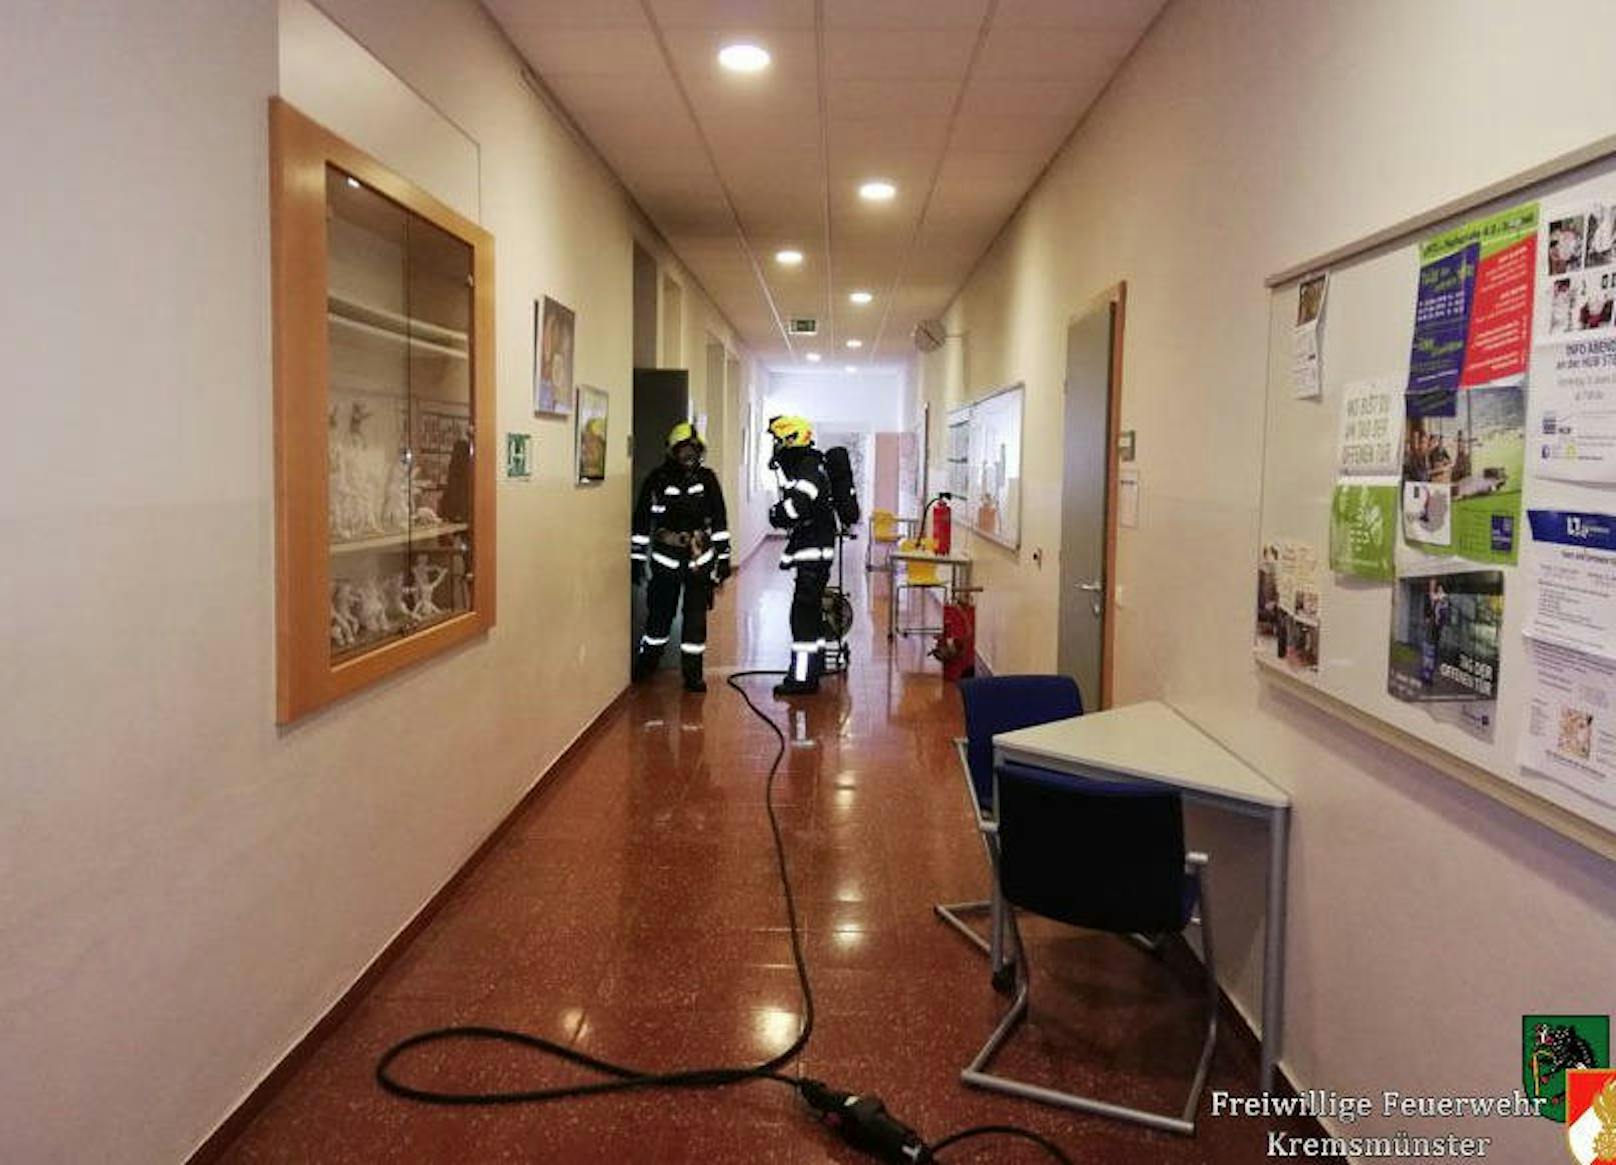 In der NMS in Kremsmünster brannte es am Donnerstag. Die Schule wurde evakuiert, die Polizei ermittelt wegen Brandstiftung. (FF Kremsmünster)